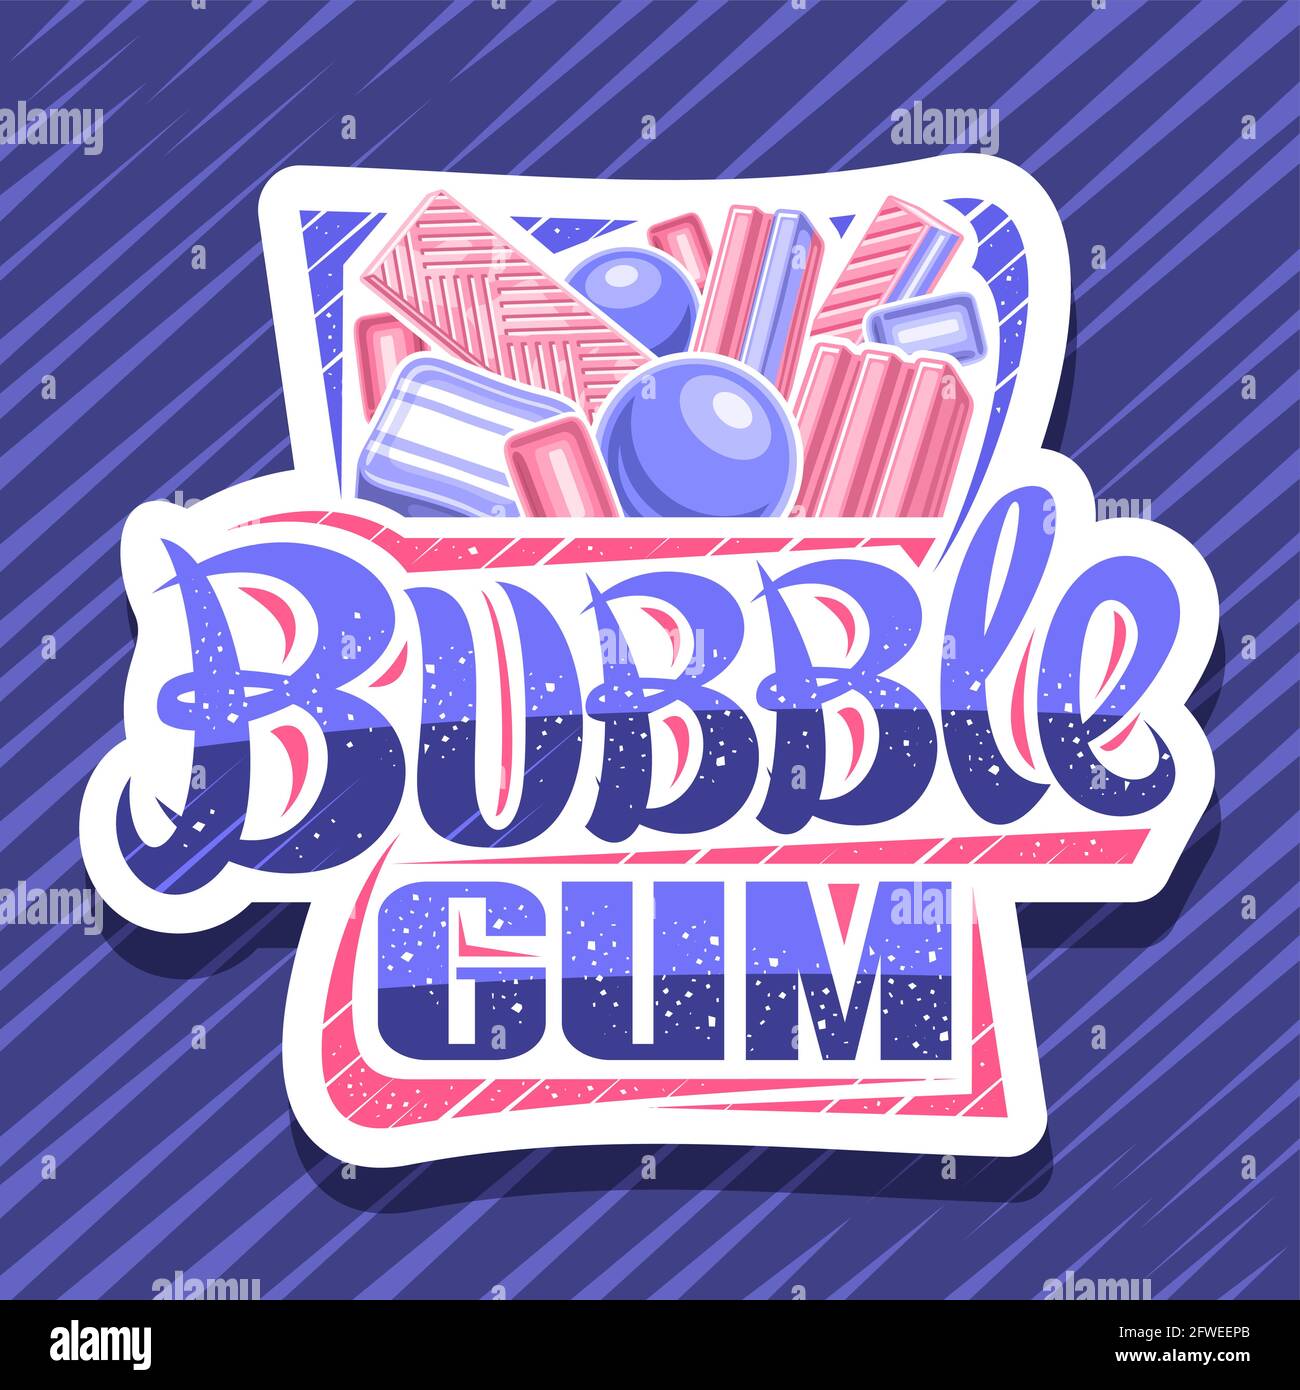 Vektor-Logo für Bubble Gum, dekorativ geschnittenes Papier-Schild mit Darstellung verschiedener Bubblegums und Bonbons, weißes Abzeichen mit einzigartigem Pinselbuchstaben Stock Vektor